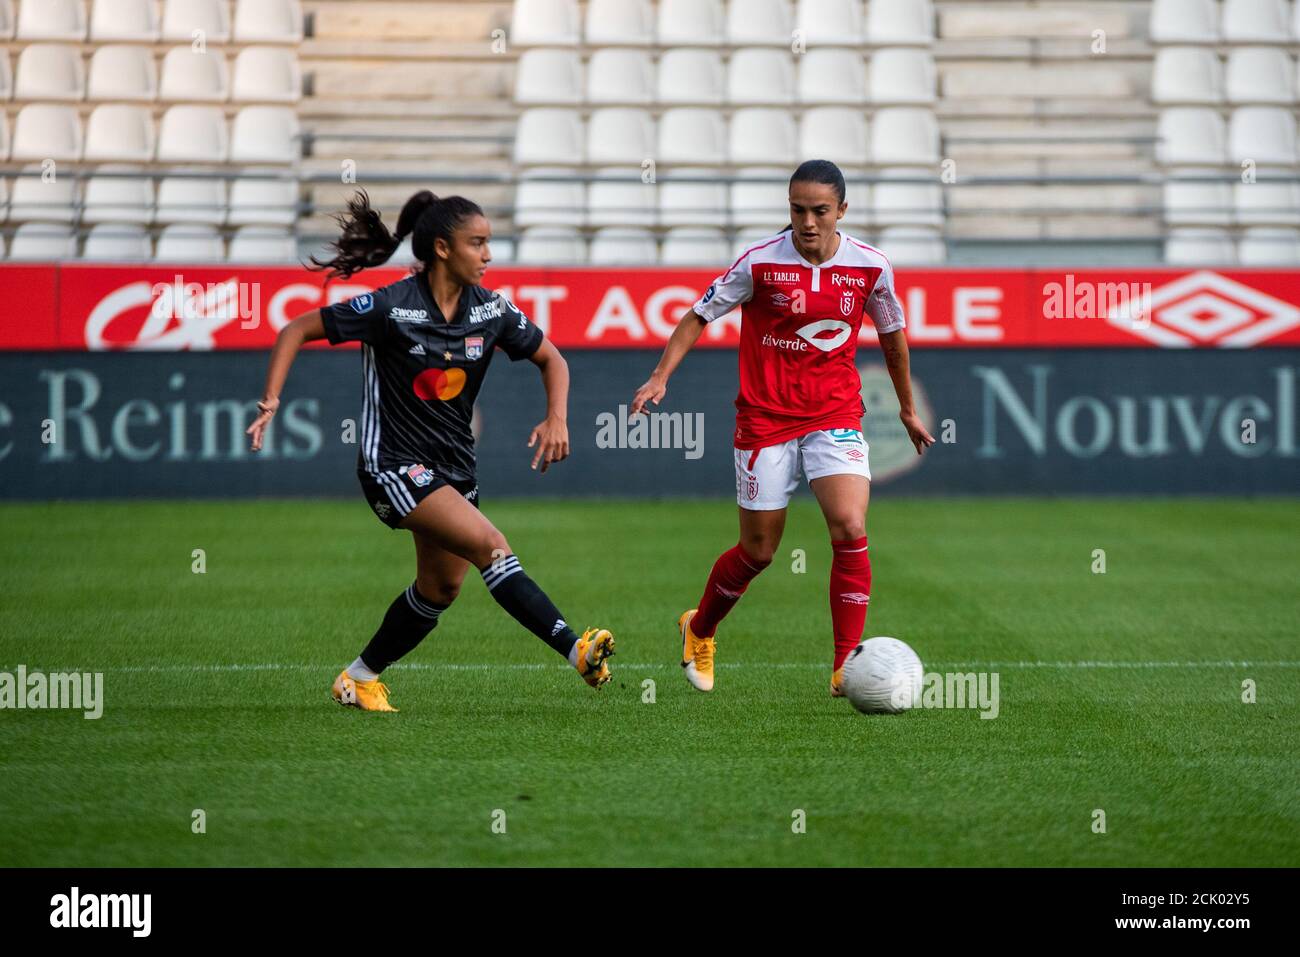 Sakina Karchaoui dell'Olympique Lyonnais e Melissa Herrera di Stade De Reims lotta per la palla durante le donne francesi campionato D1 Arkema footb Foto Stock